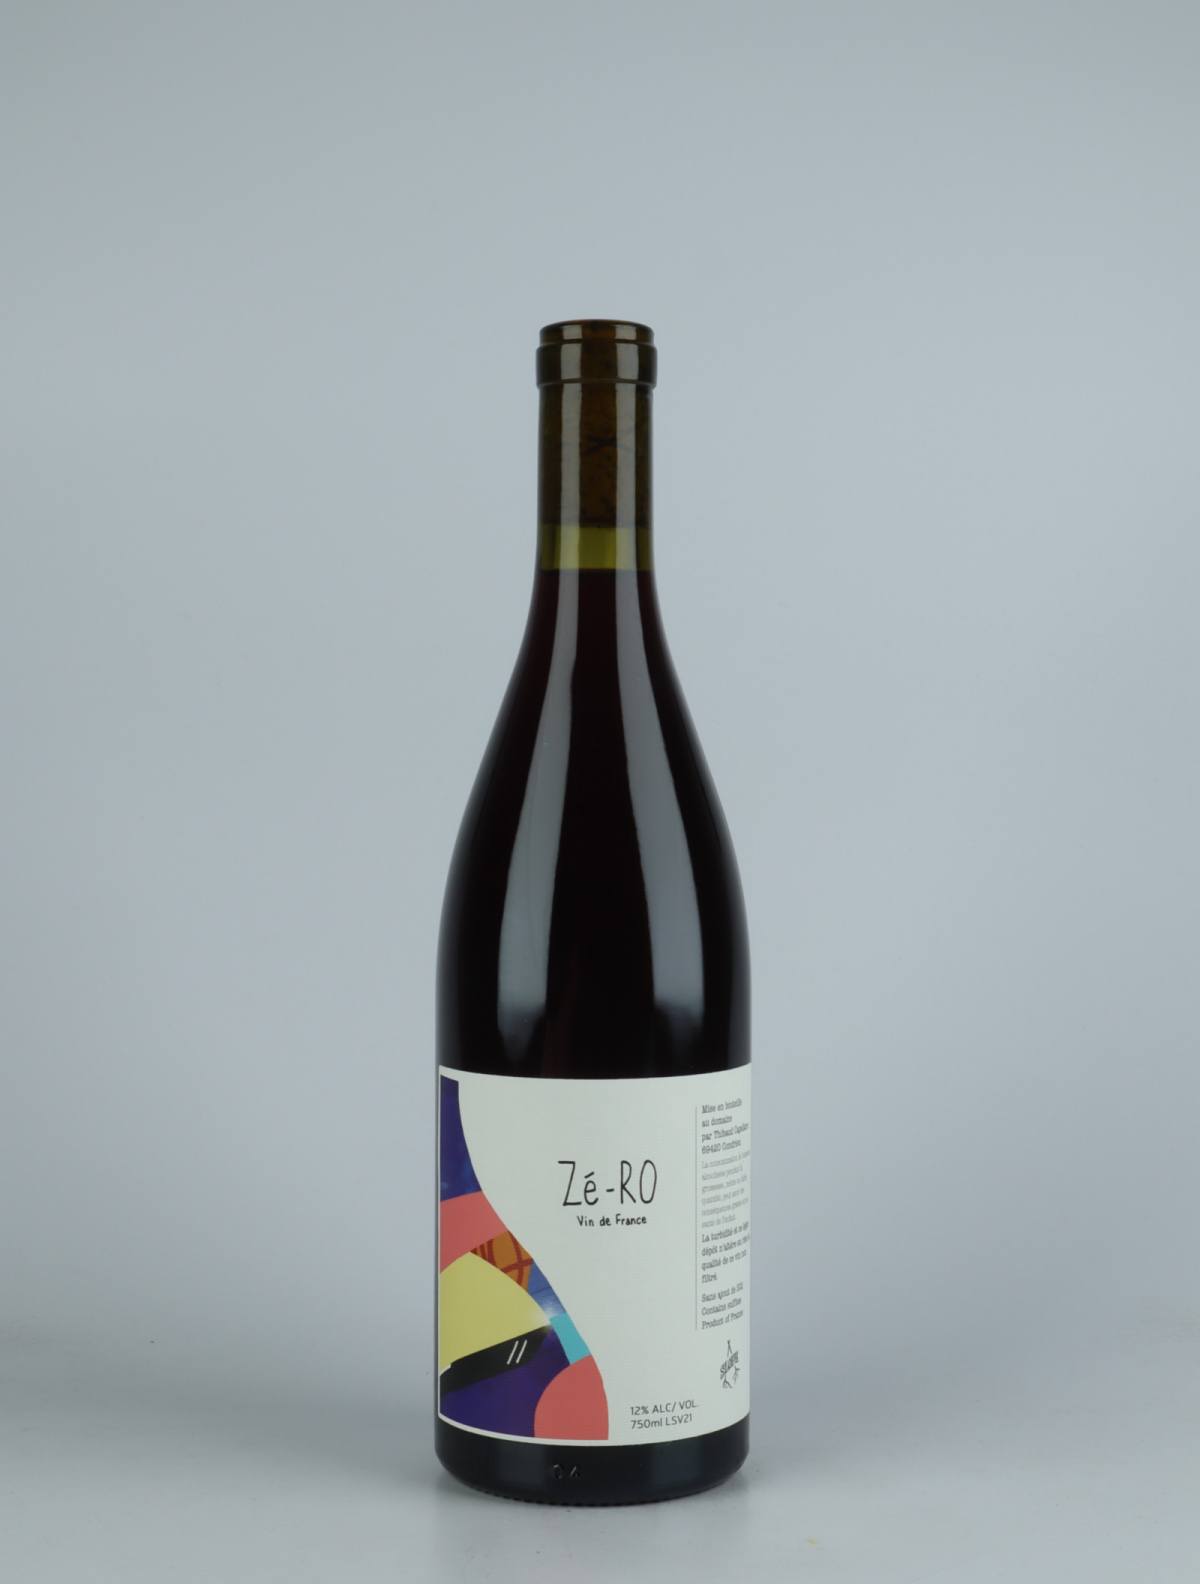 A bottle 2021 Zé-RO Red wine from Slope, Rhône in France